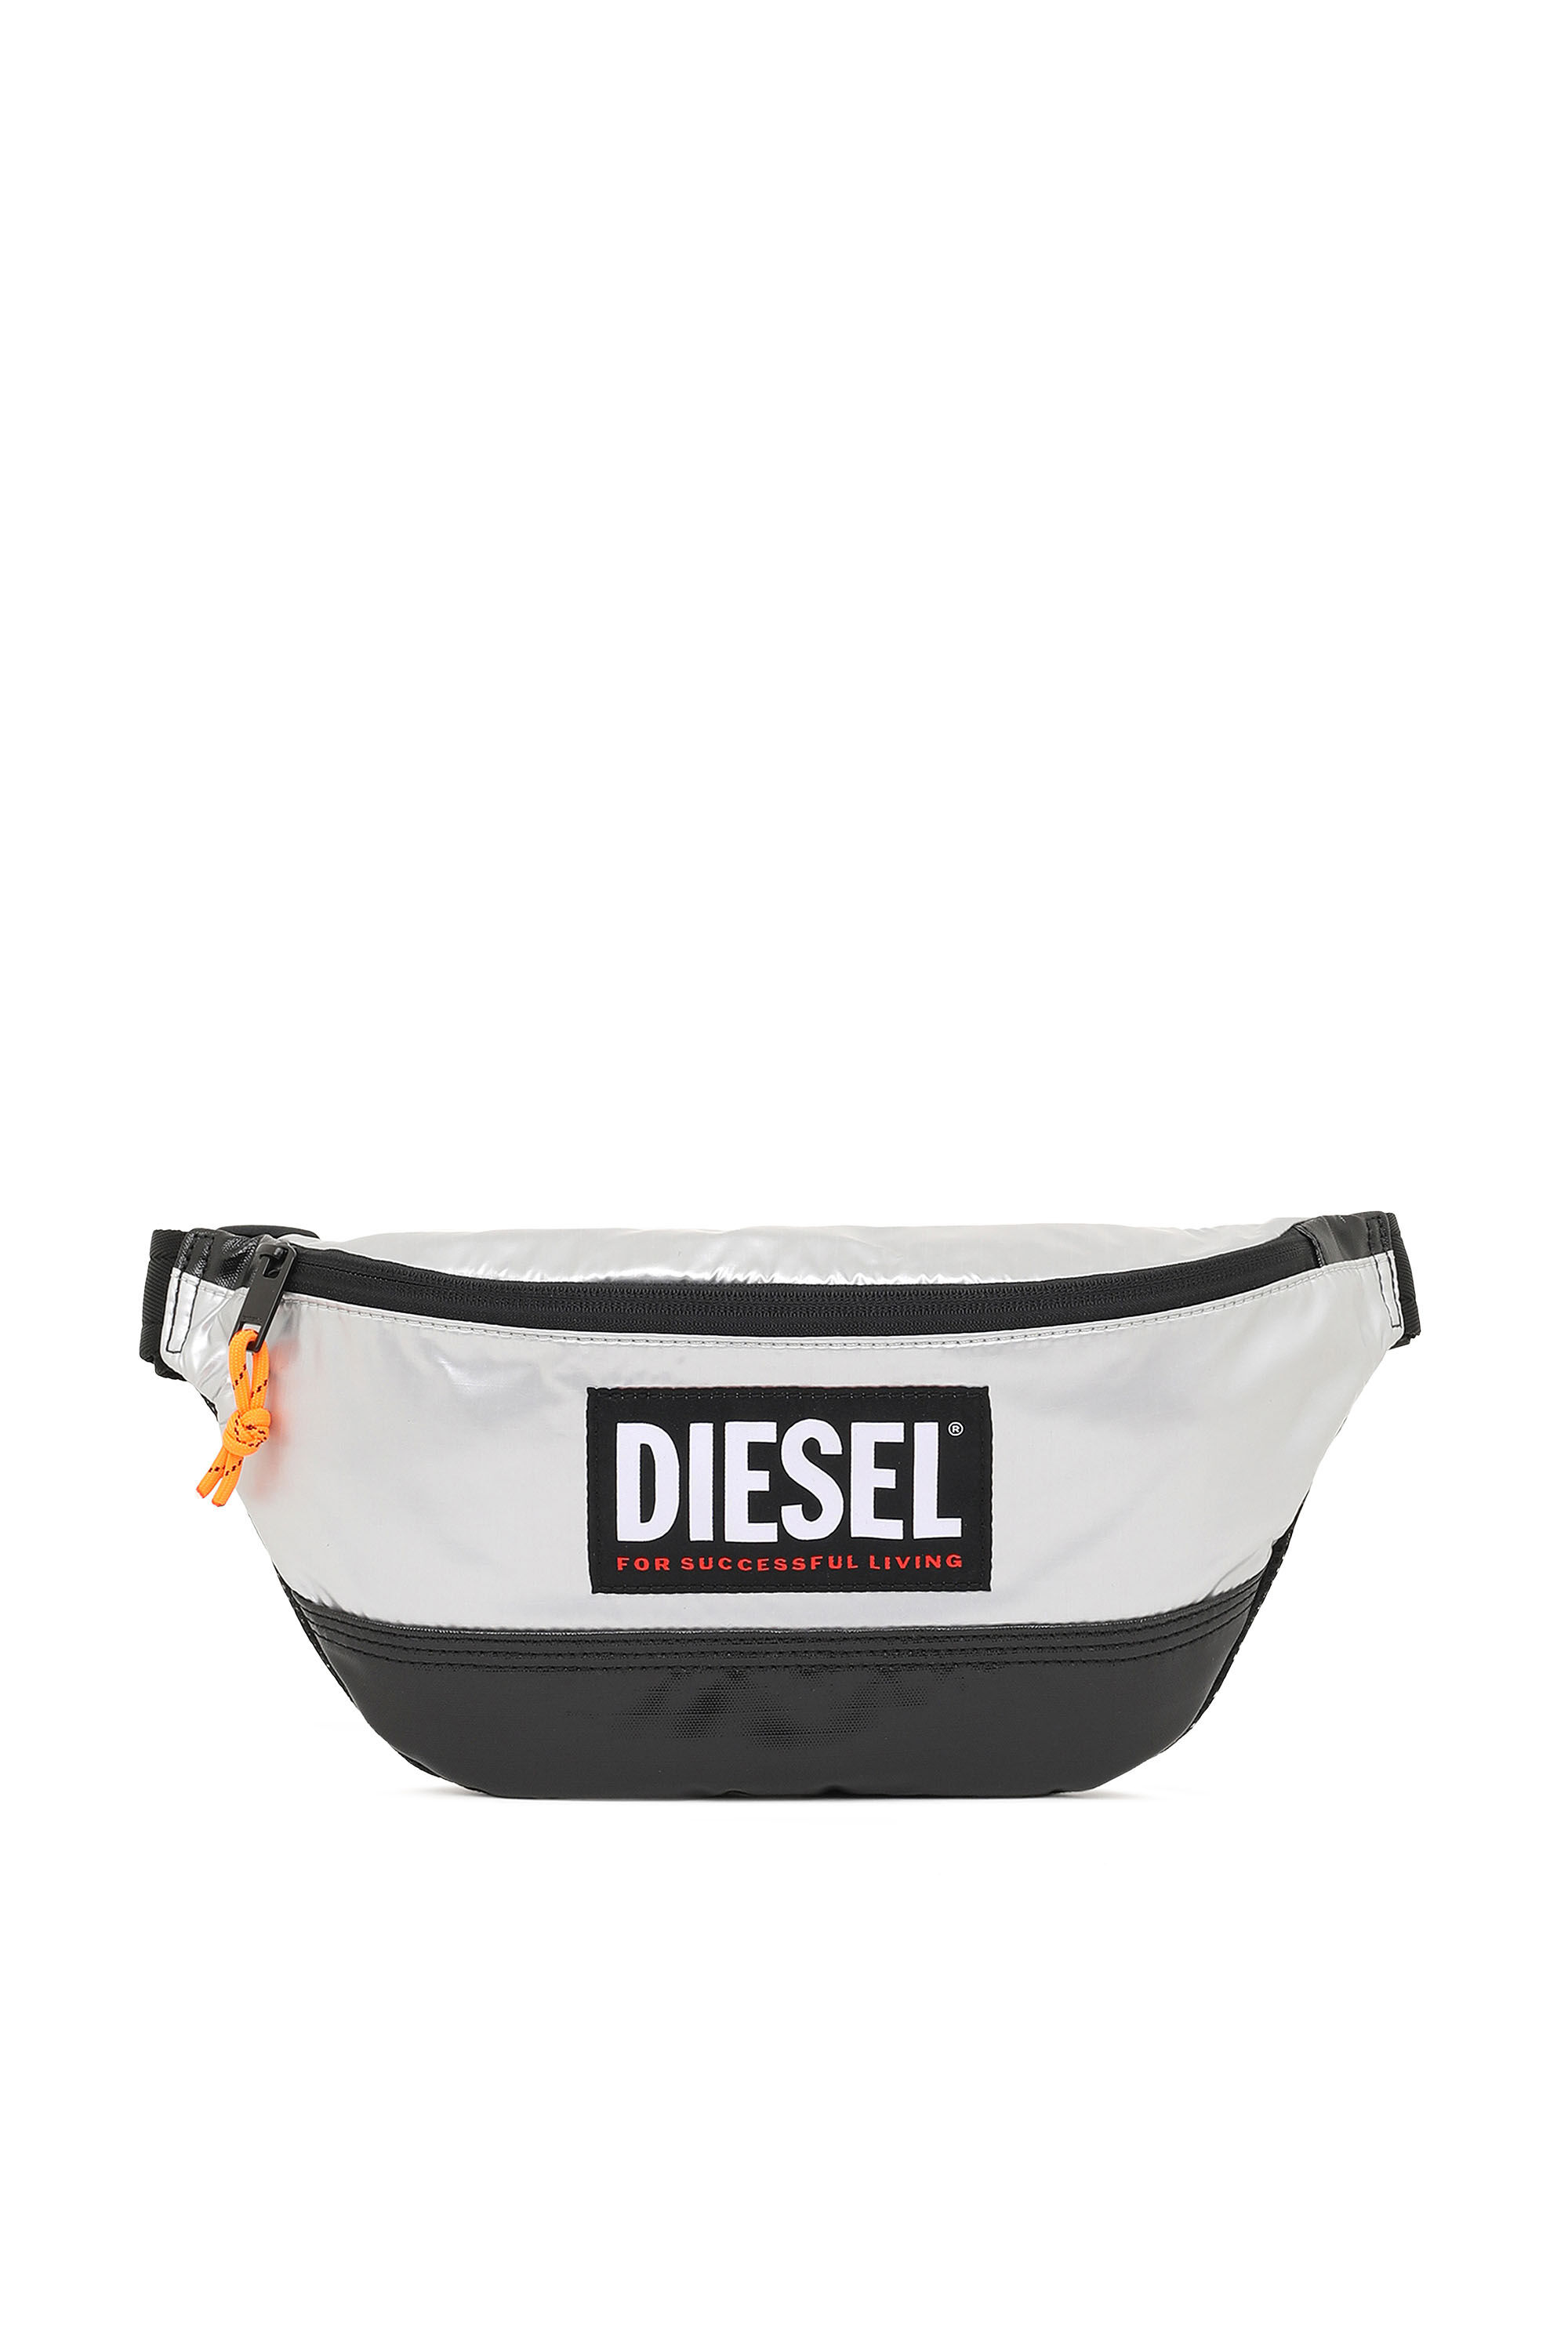 Diesel - LYAM PAT, Plateado/Noir - Image 2